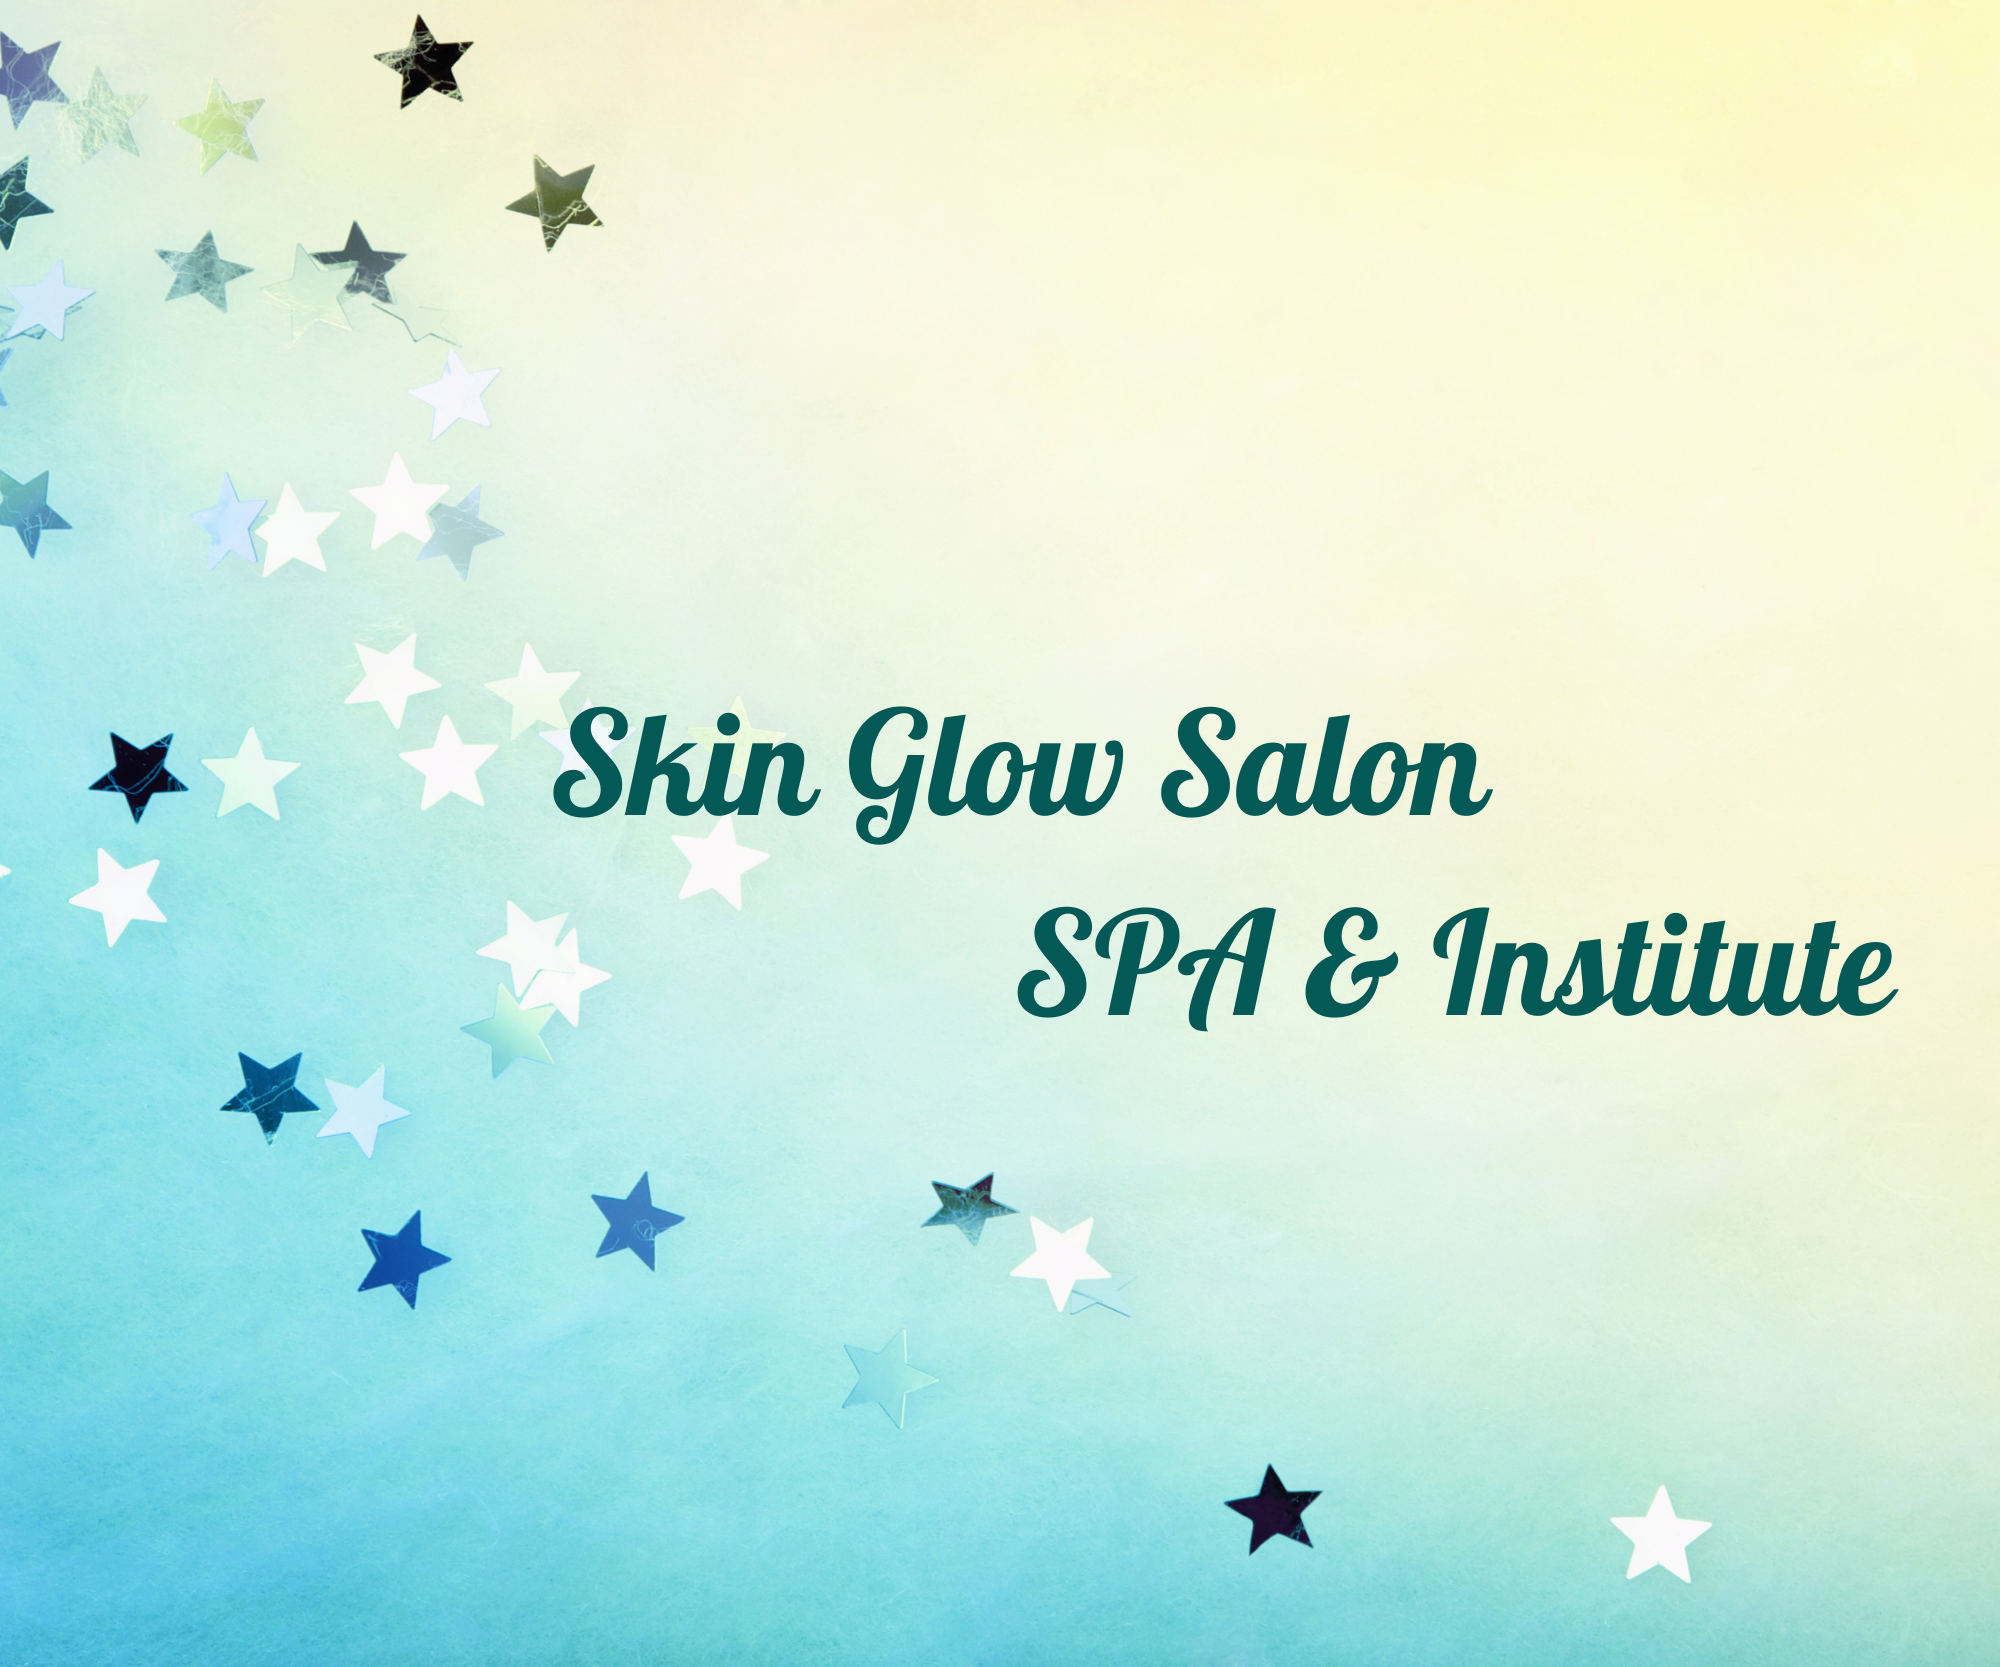 Skin Glow Salon SPA & Institute 